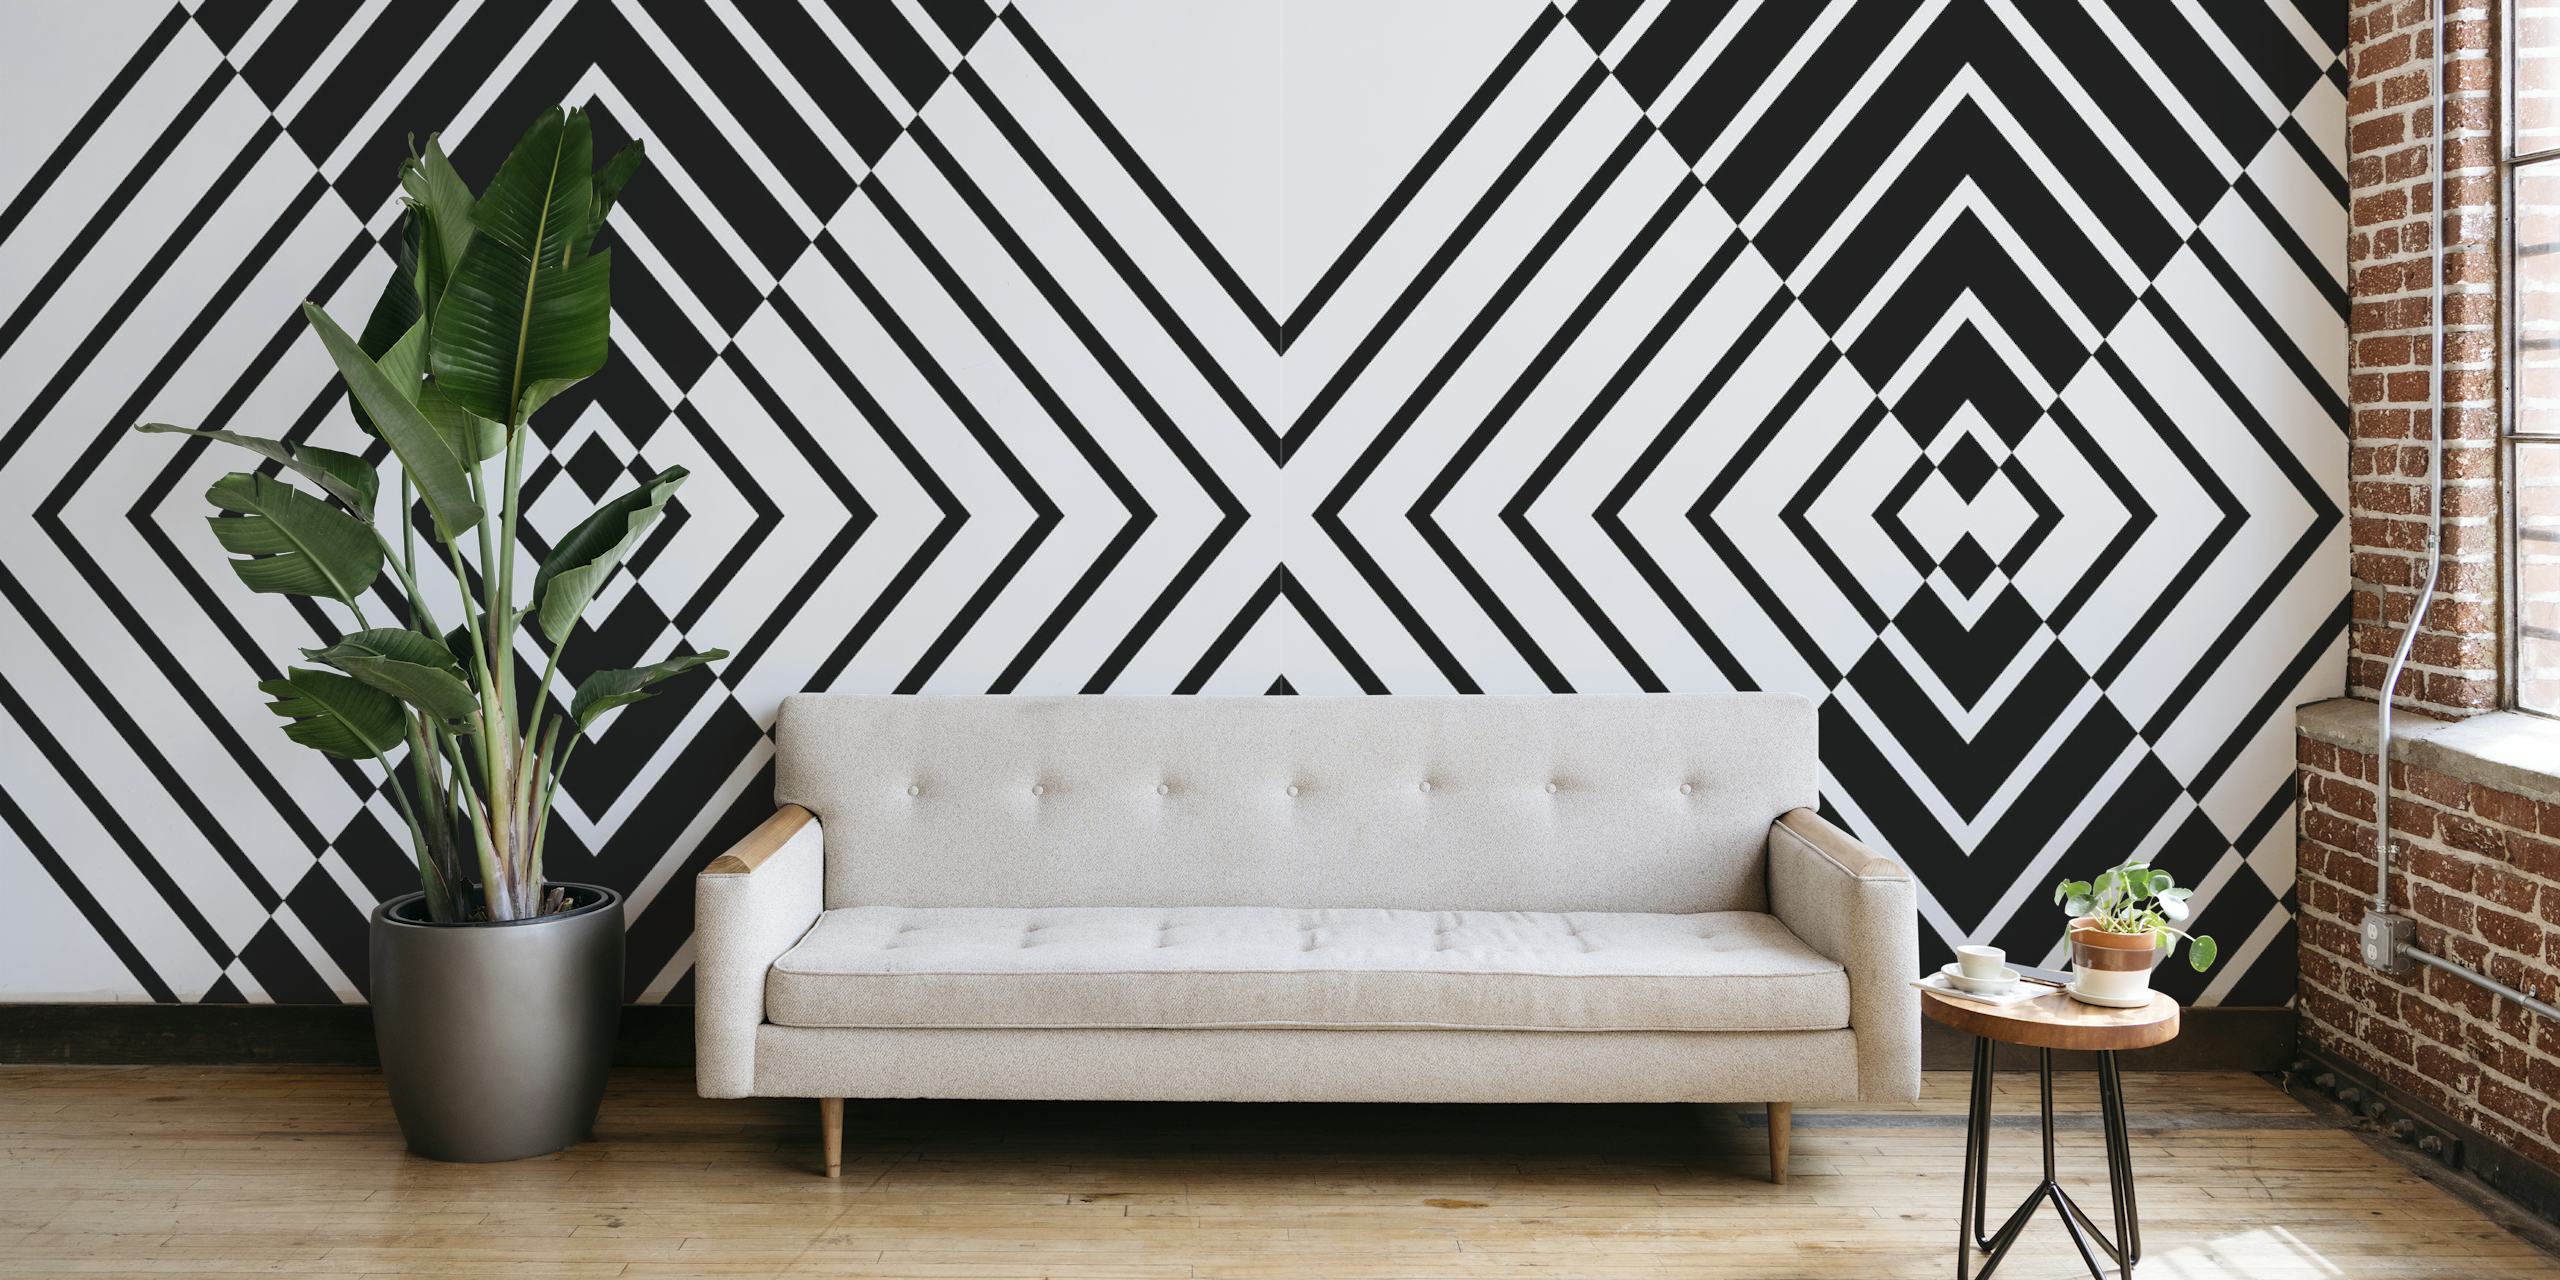 Svart och vitt geometriskt mönster tapet skapar en djärv abstrakt design